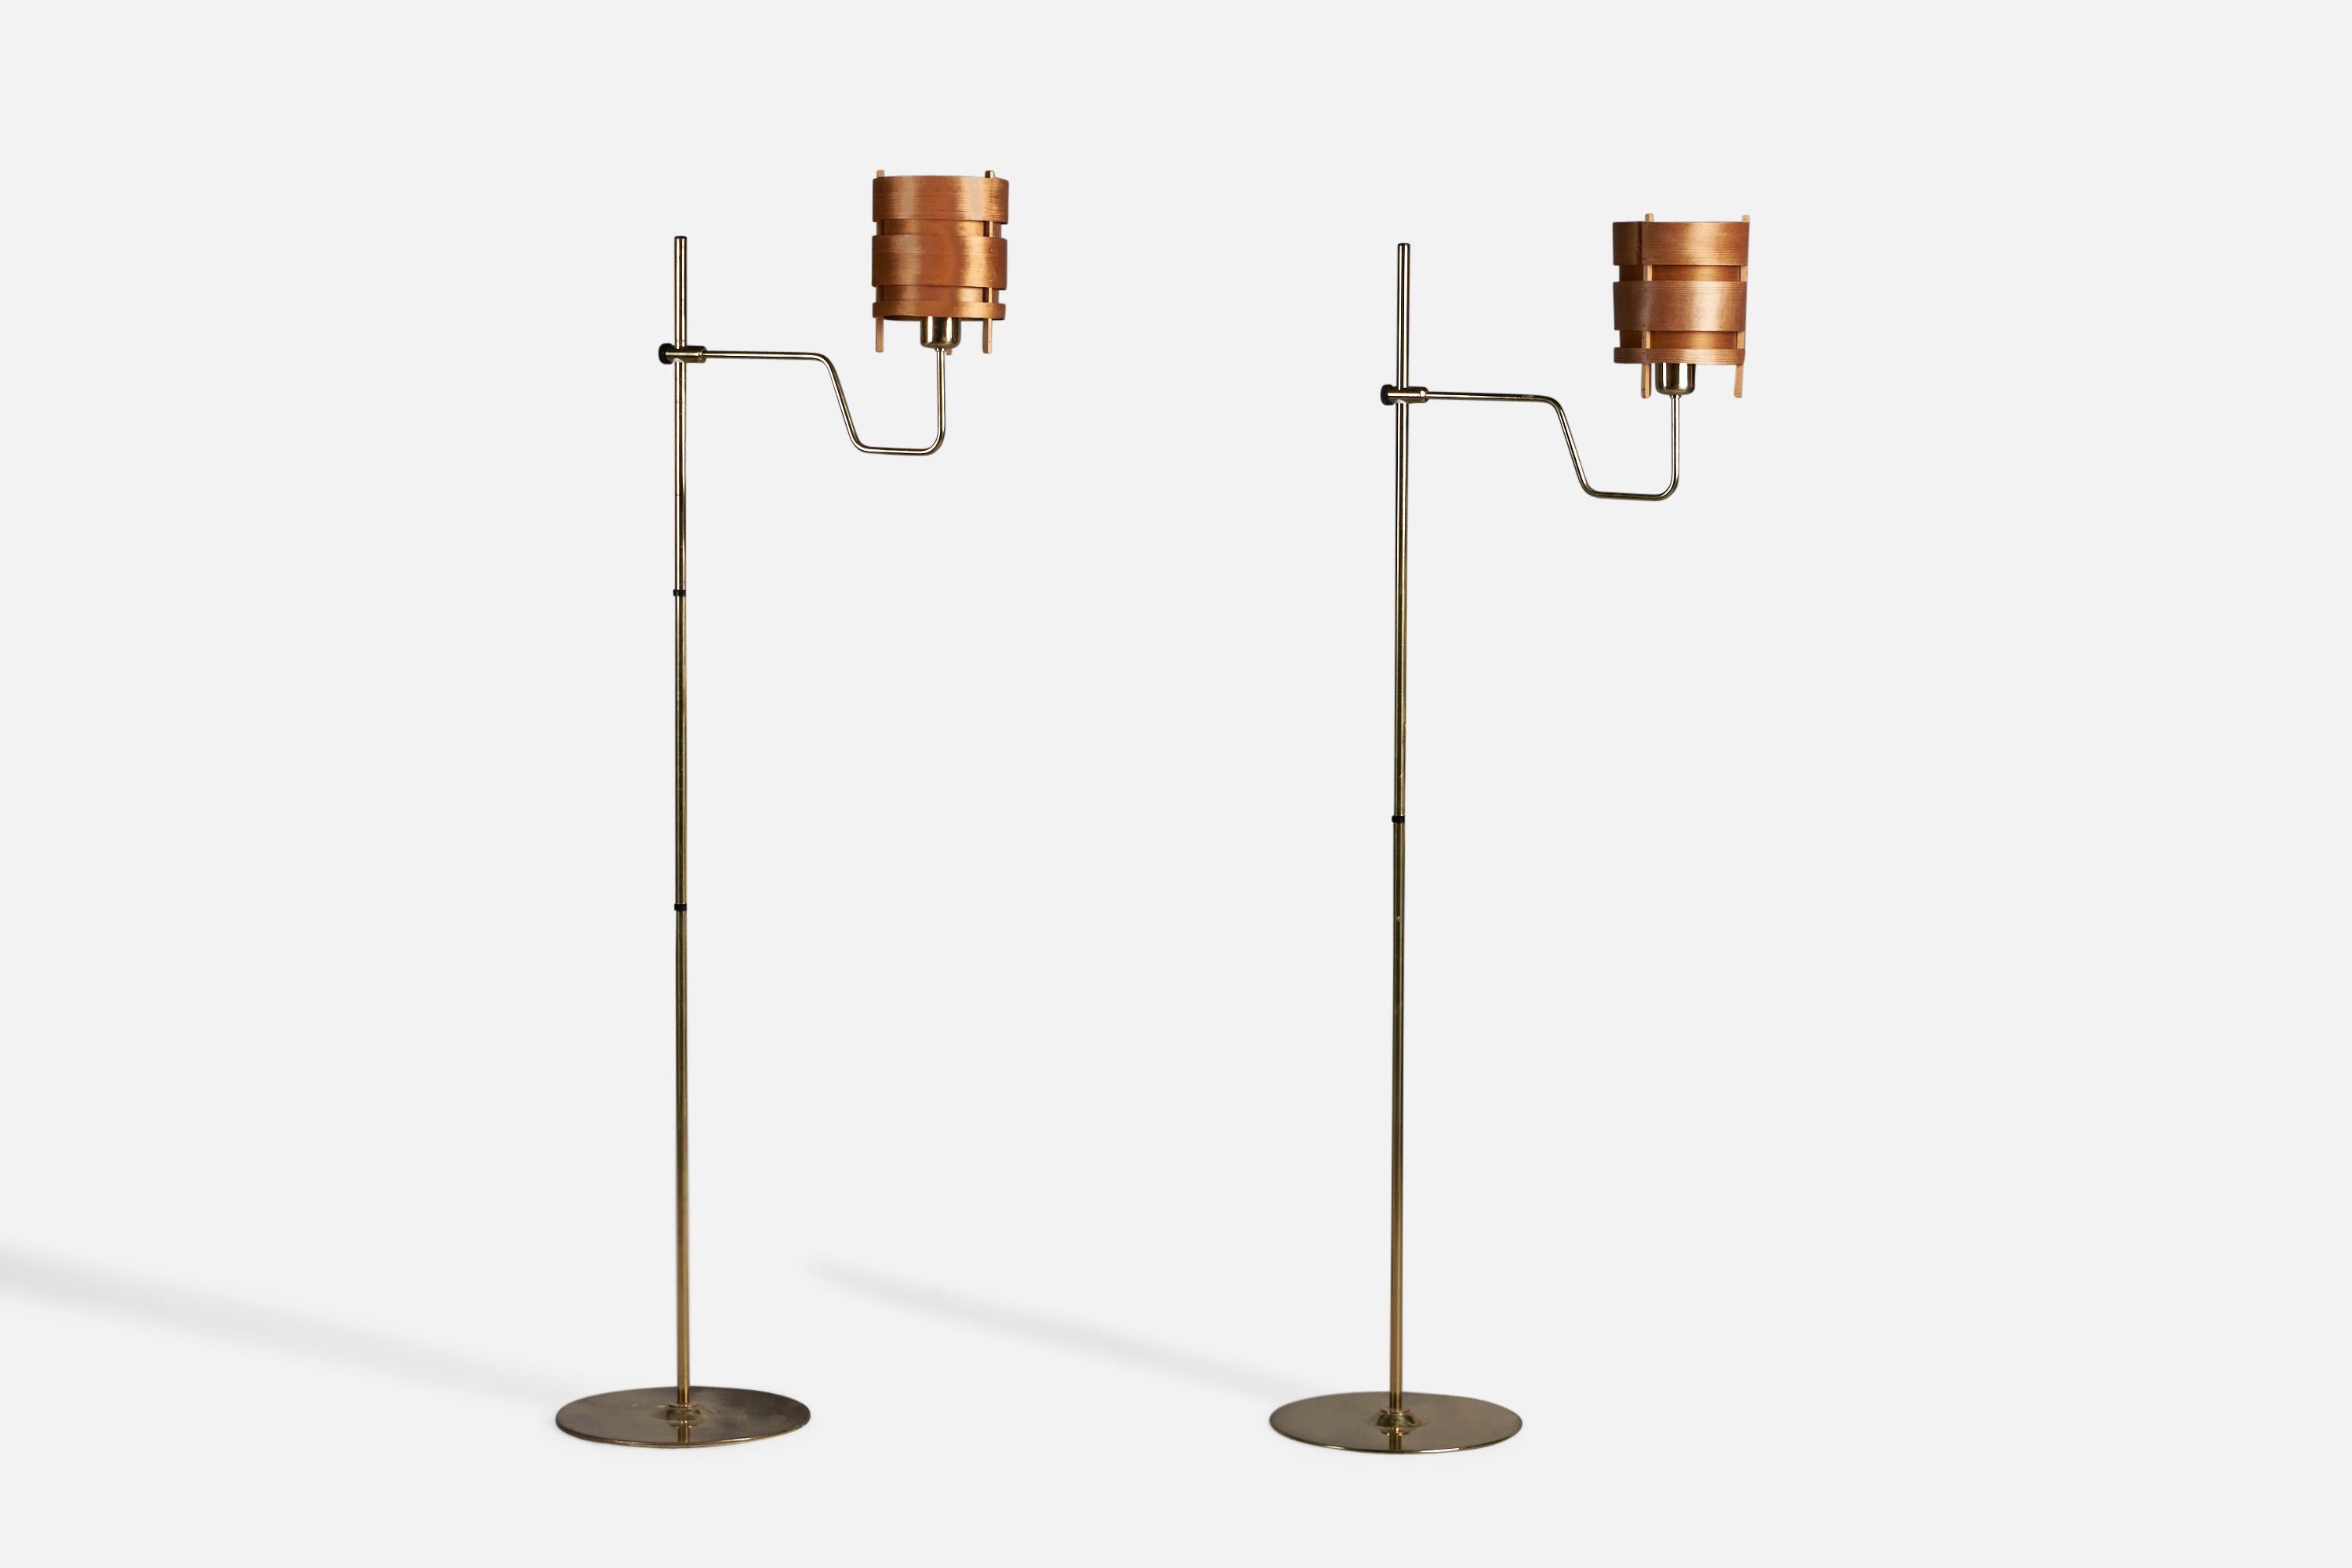 Paire de lampadaires en laiton, pin et placage de pin moulé, conçus et produits par Hans Agne Jakobsson, Markaryd, Suède, c. années 1970.

Dimensions globales (pouces) : 62.5